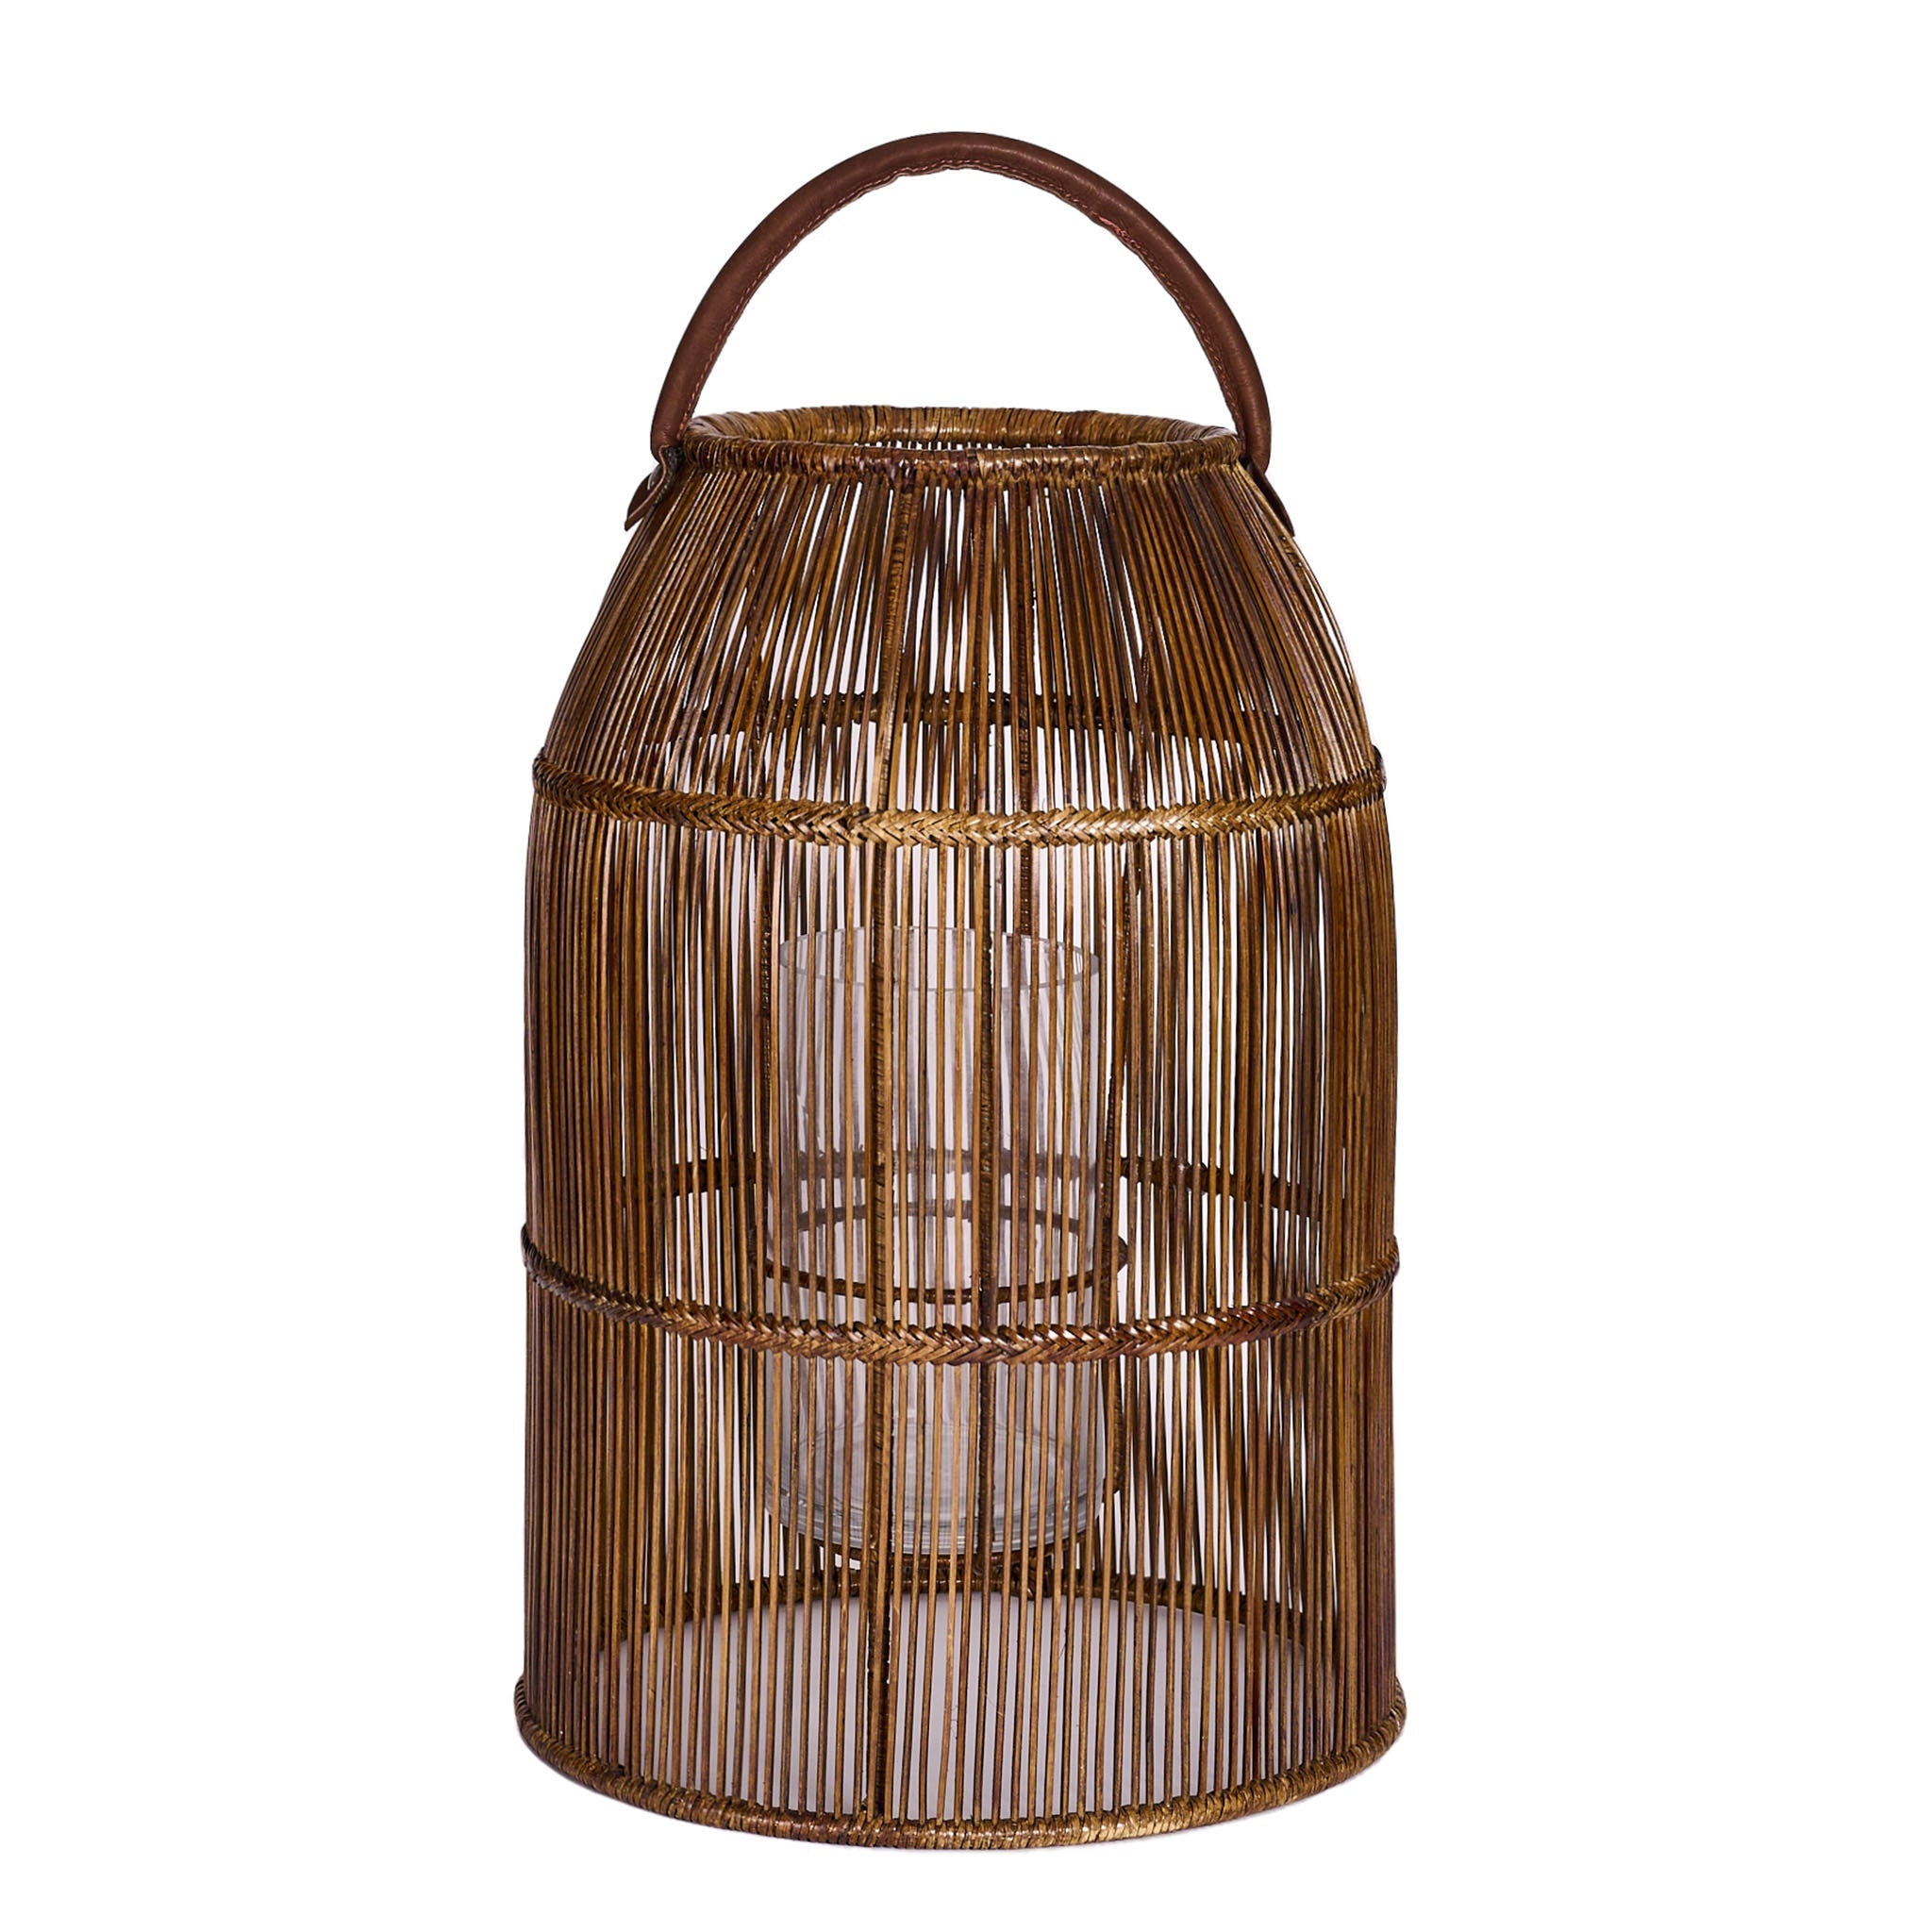 Rangoon Lantern in rattan and bamboo